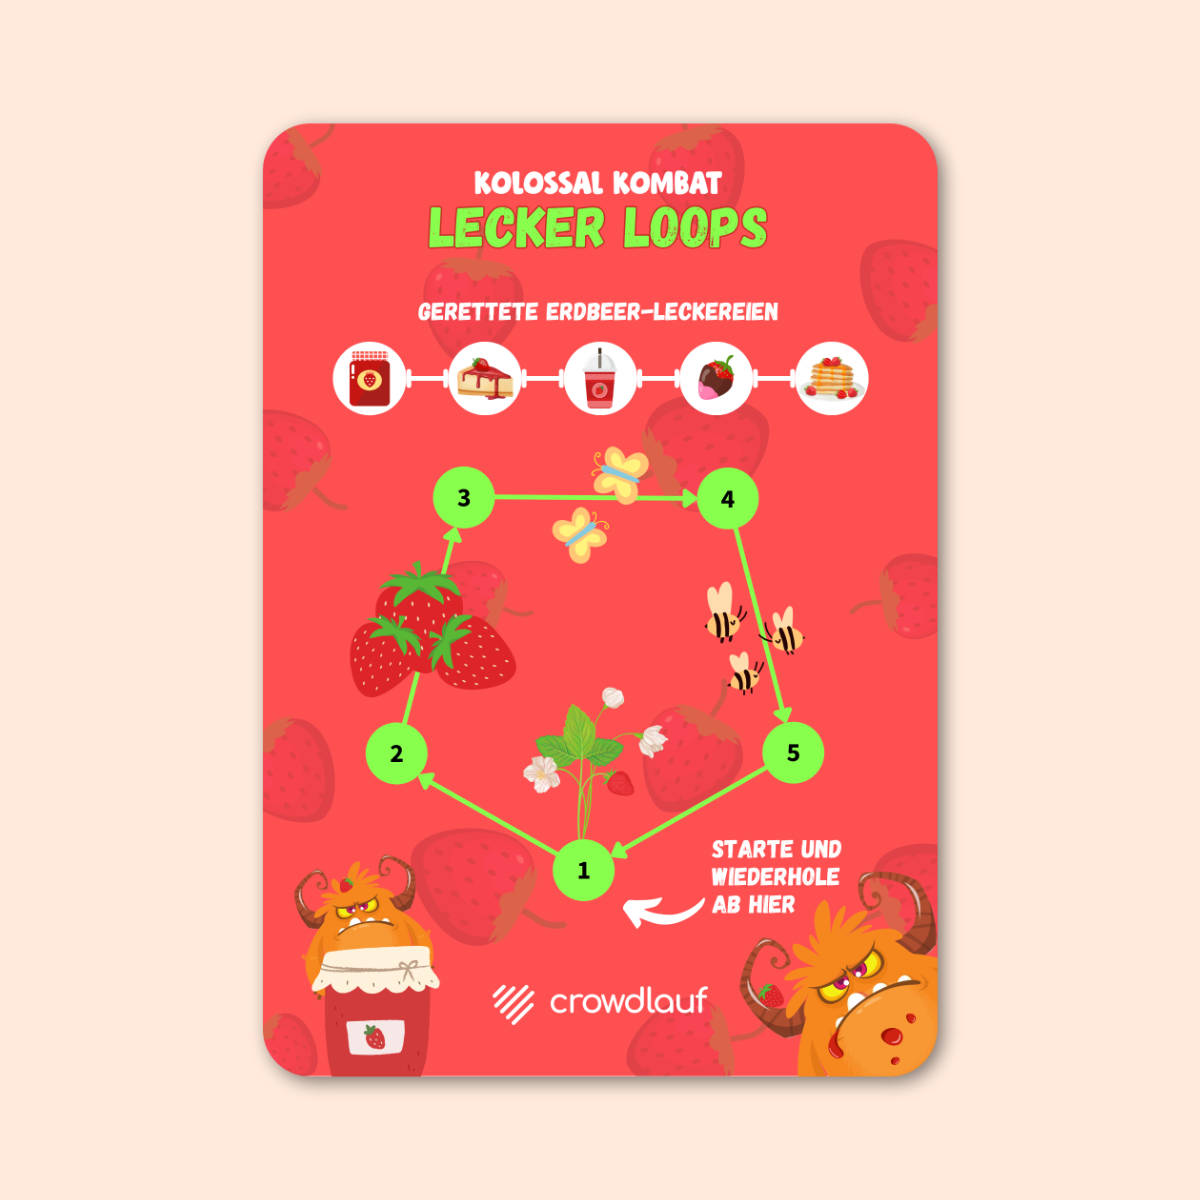 Lecker Loops: Spielfeld zur Lauf-Challenge - Crowdlauf